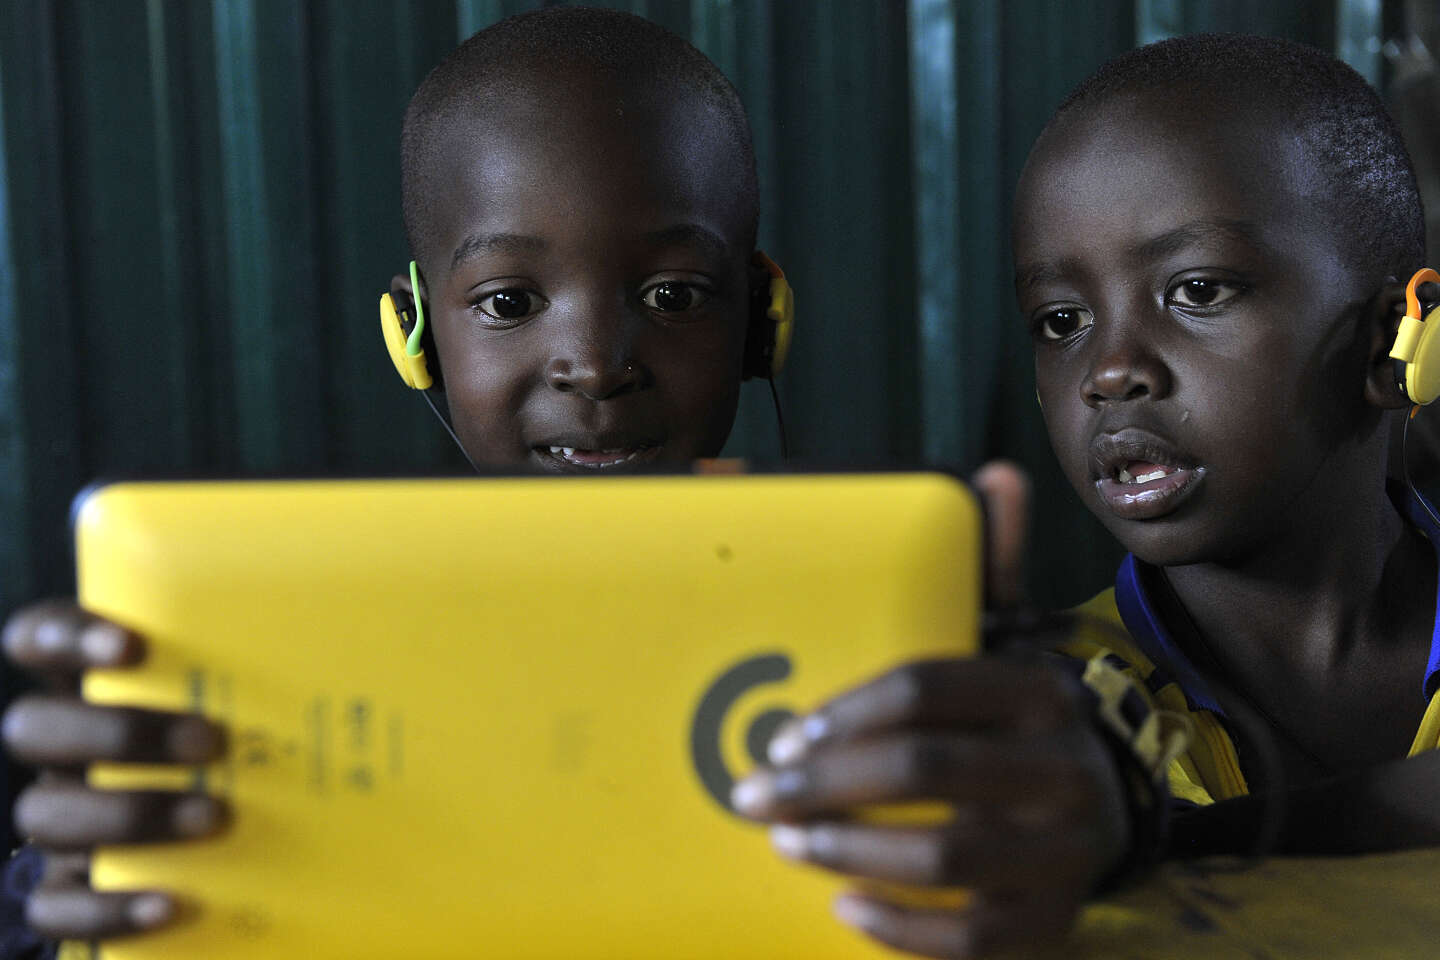 Le Kenya, nouveau vivier pour les géants de la tech